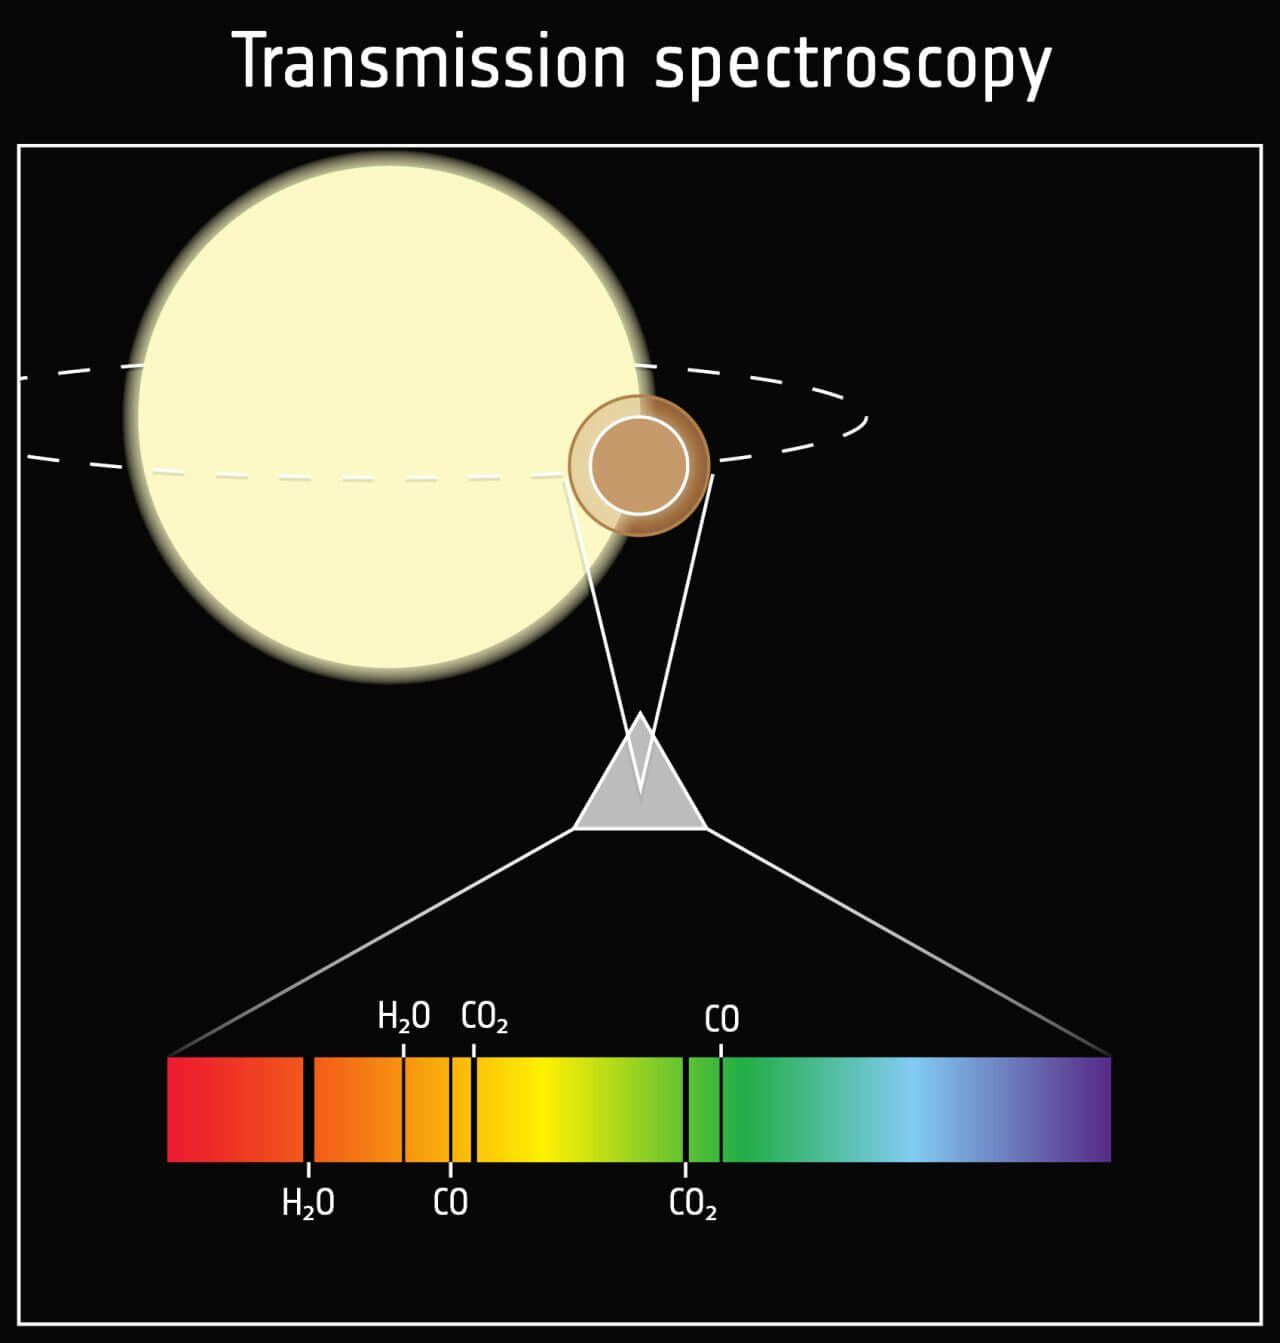 【▲ 参考画像：透過スペクトルに現れた吸収線をもとに惑星の大気に存在する物質を調べる方法を示したイメージ図（Credit: ESA）】